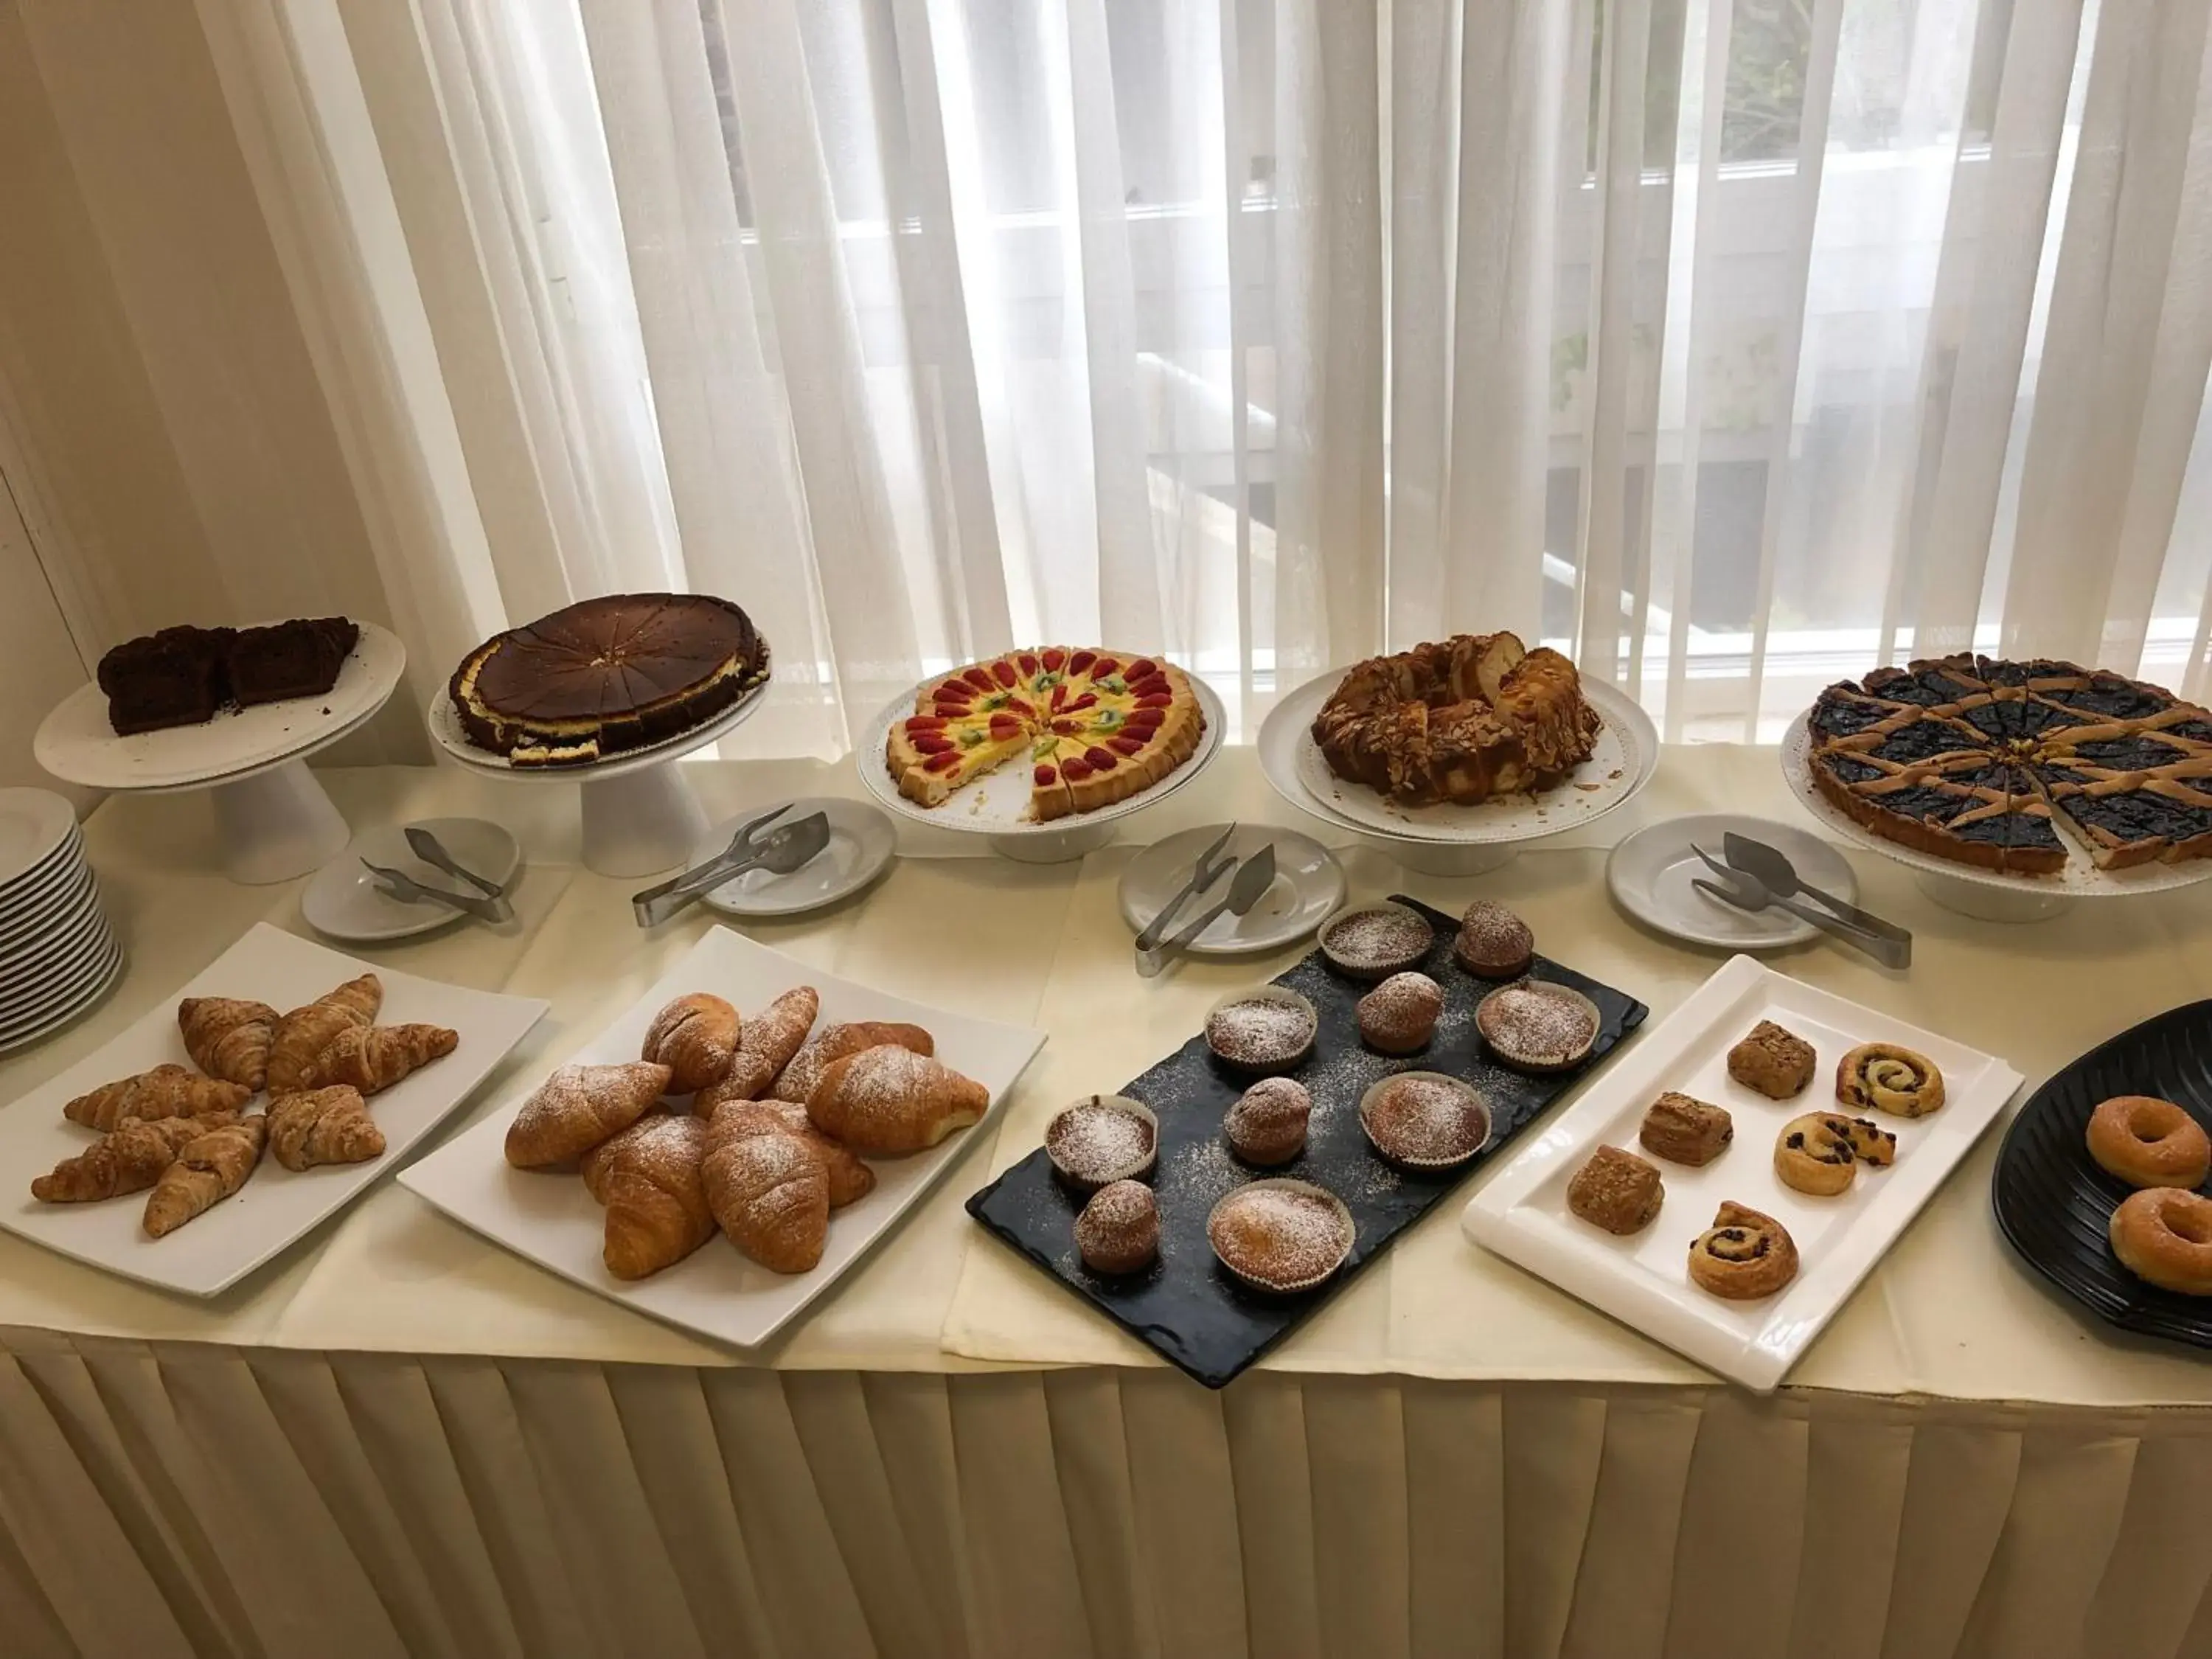 Buffet breakfast in Hotel Hollywood